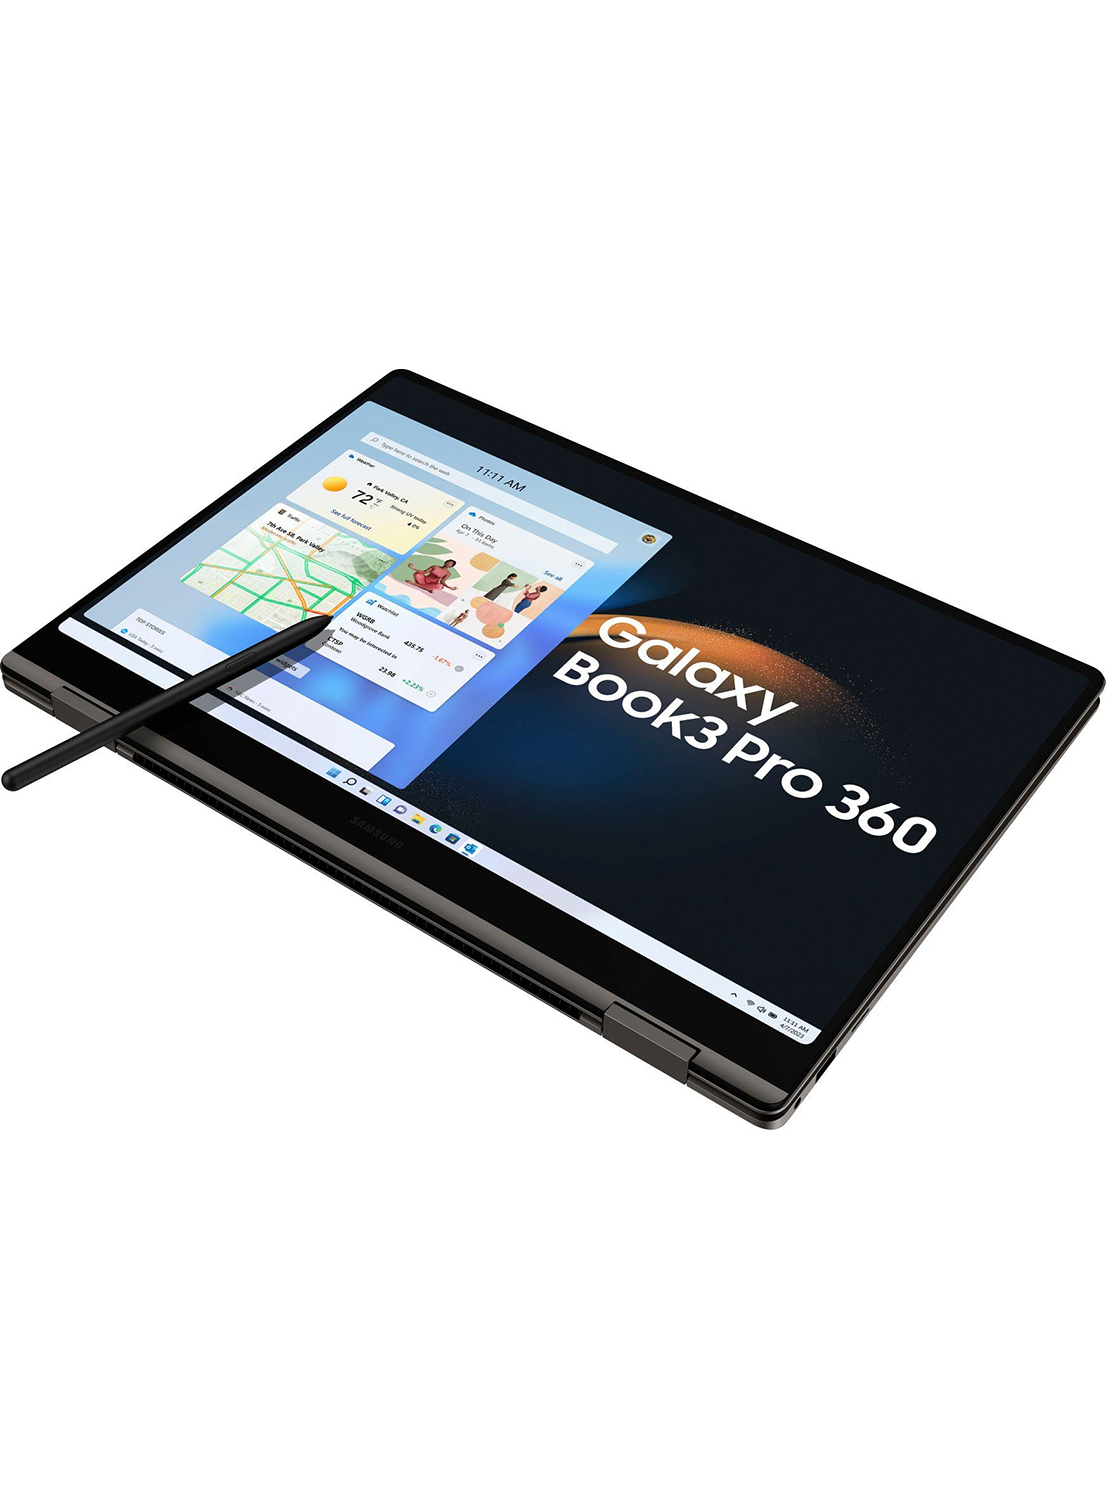 Samsung Galaxy Book 3 Pro 360 16" NP960QFG-KA1DE i5-1340P 256GD SSD QWERTZ